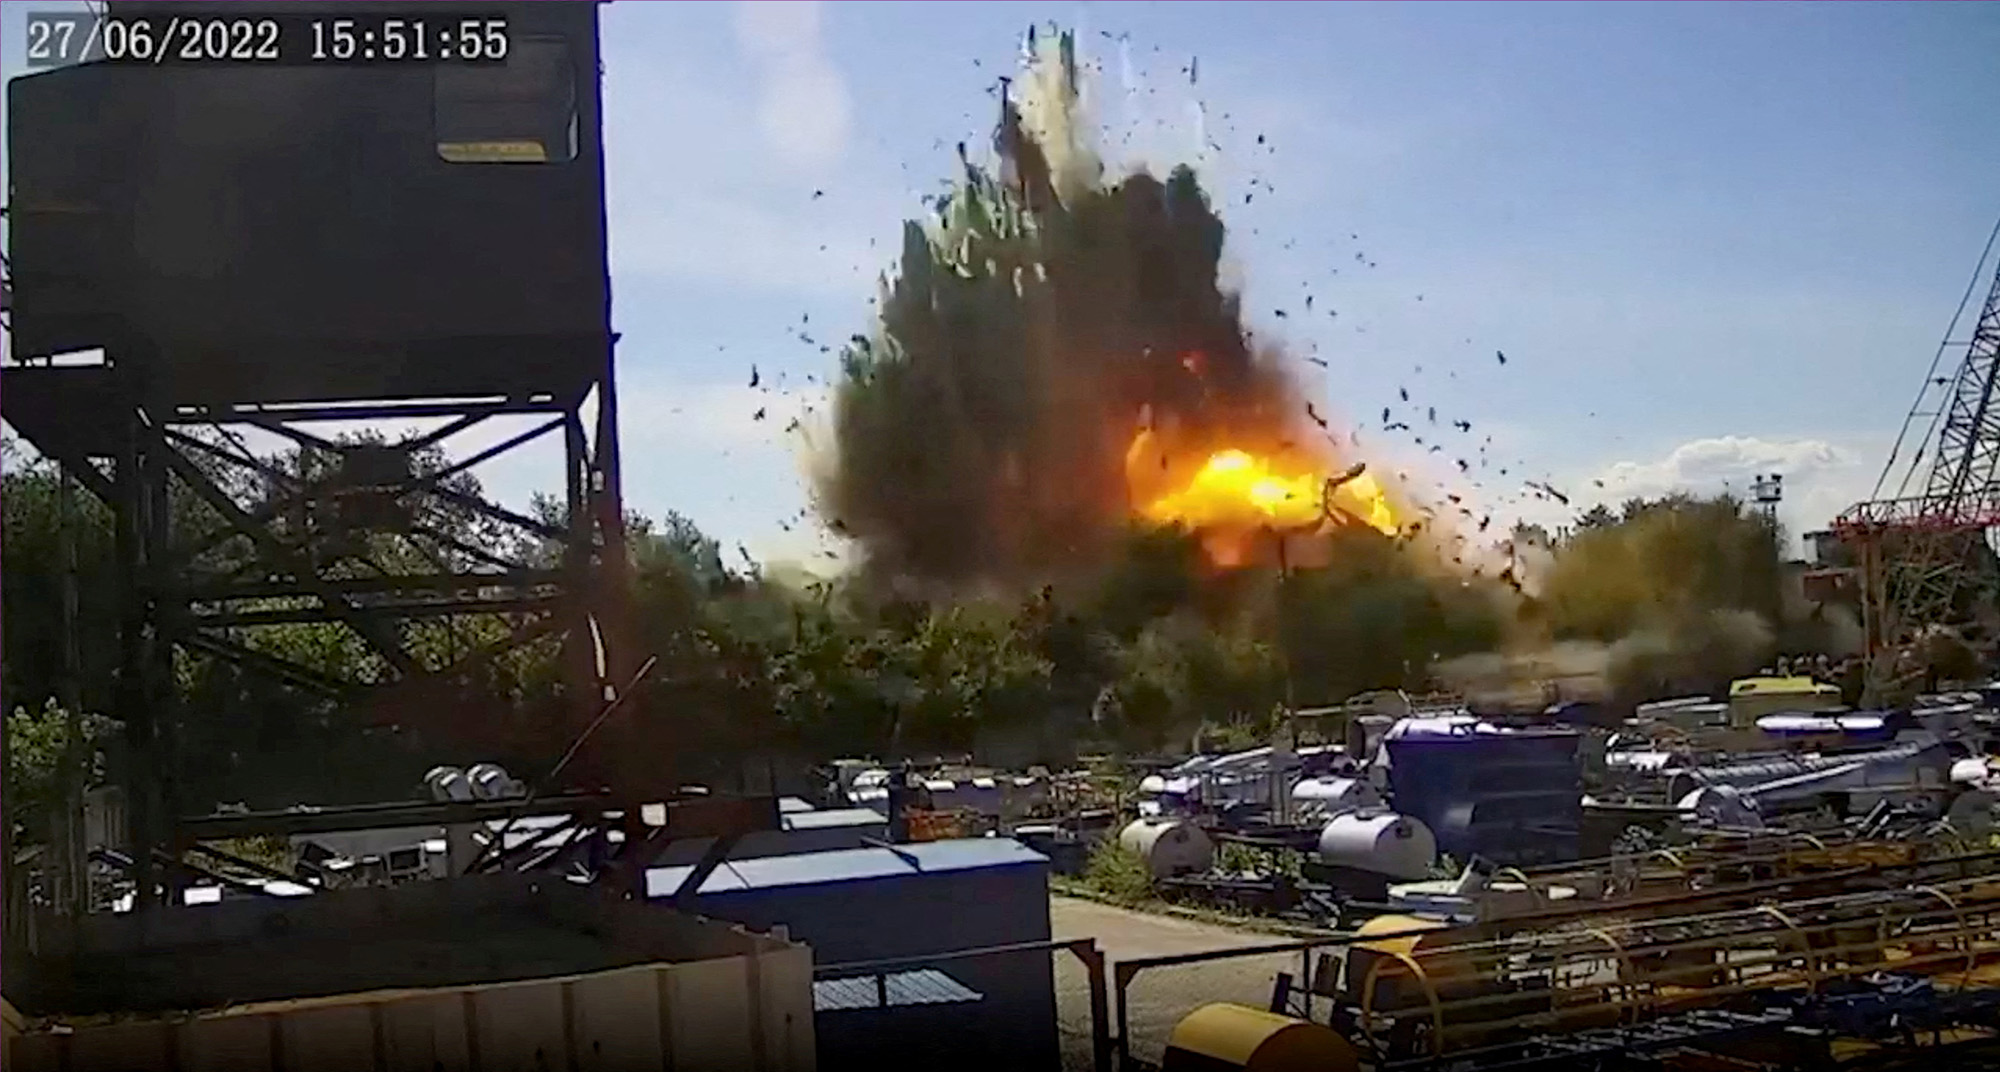 28 Haziran'da yayınlanan güvenlik kamerası kayıtlarından alınan bu hareketsiz görüntüde, Ukrayna'daki Kremenchuk alışveriş merkezindeki patlamanın bir görünümü.